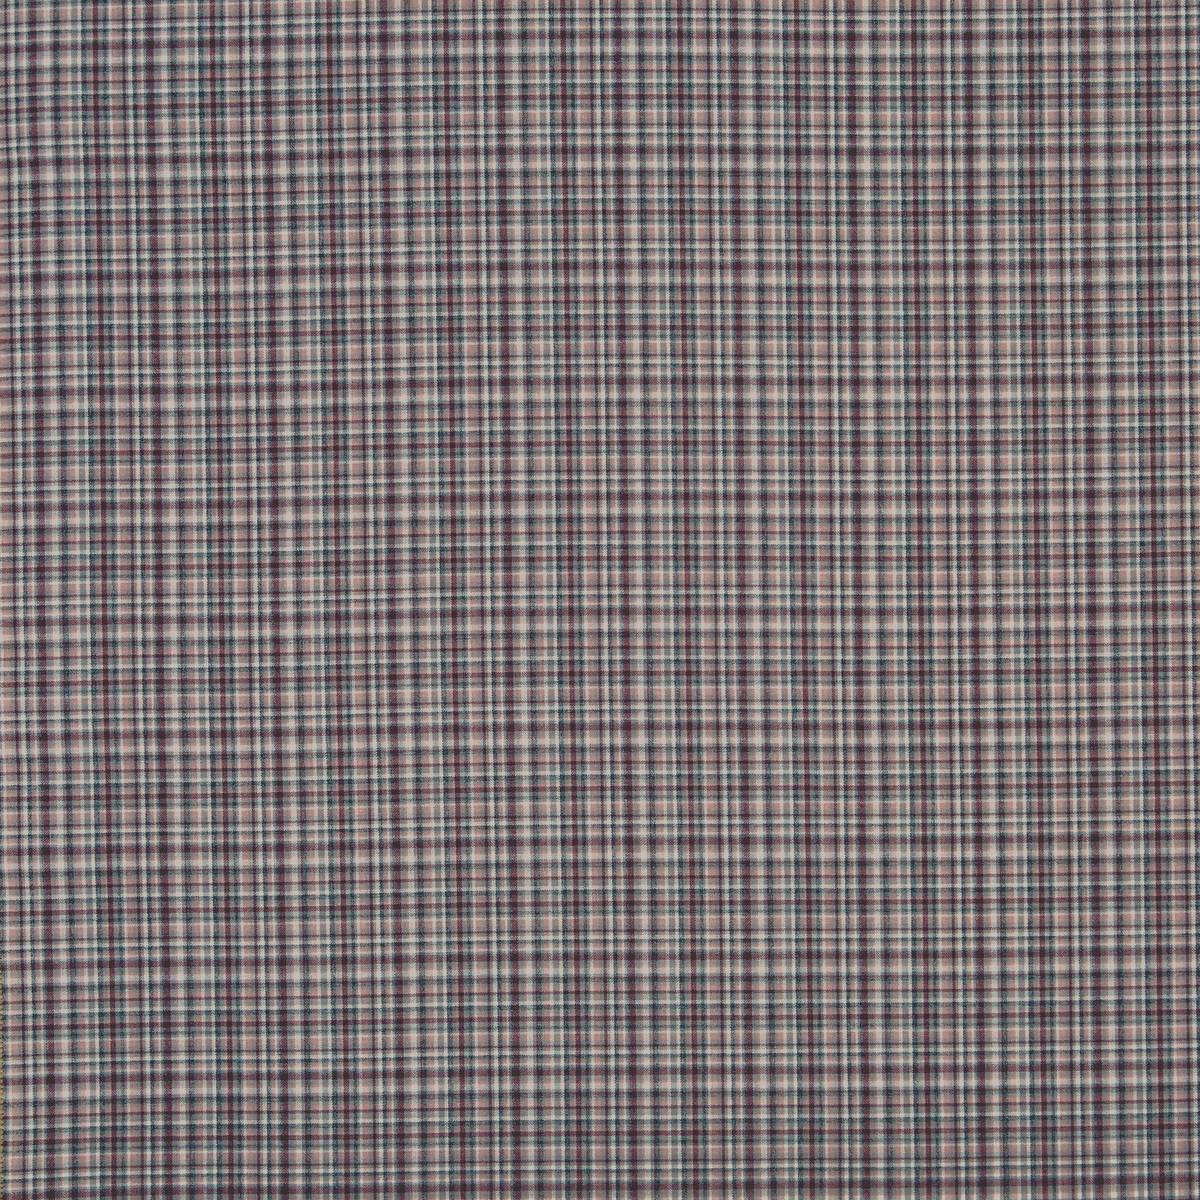 Walton Thistle Fabric by Prestigious Textiles